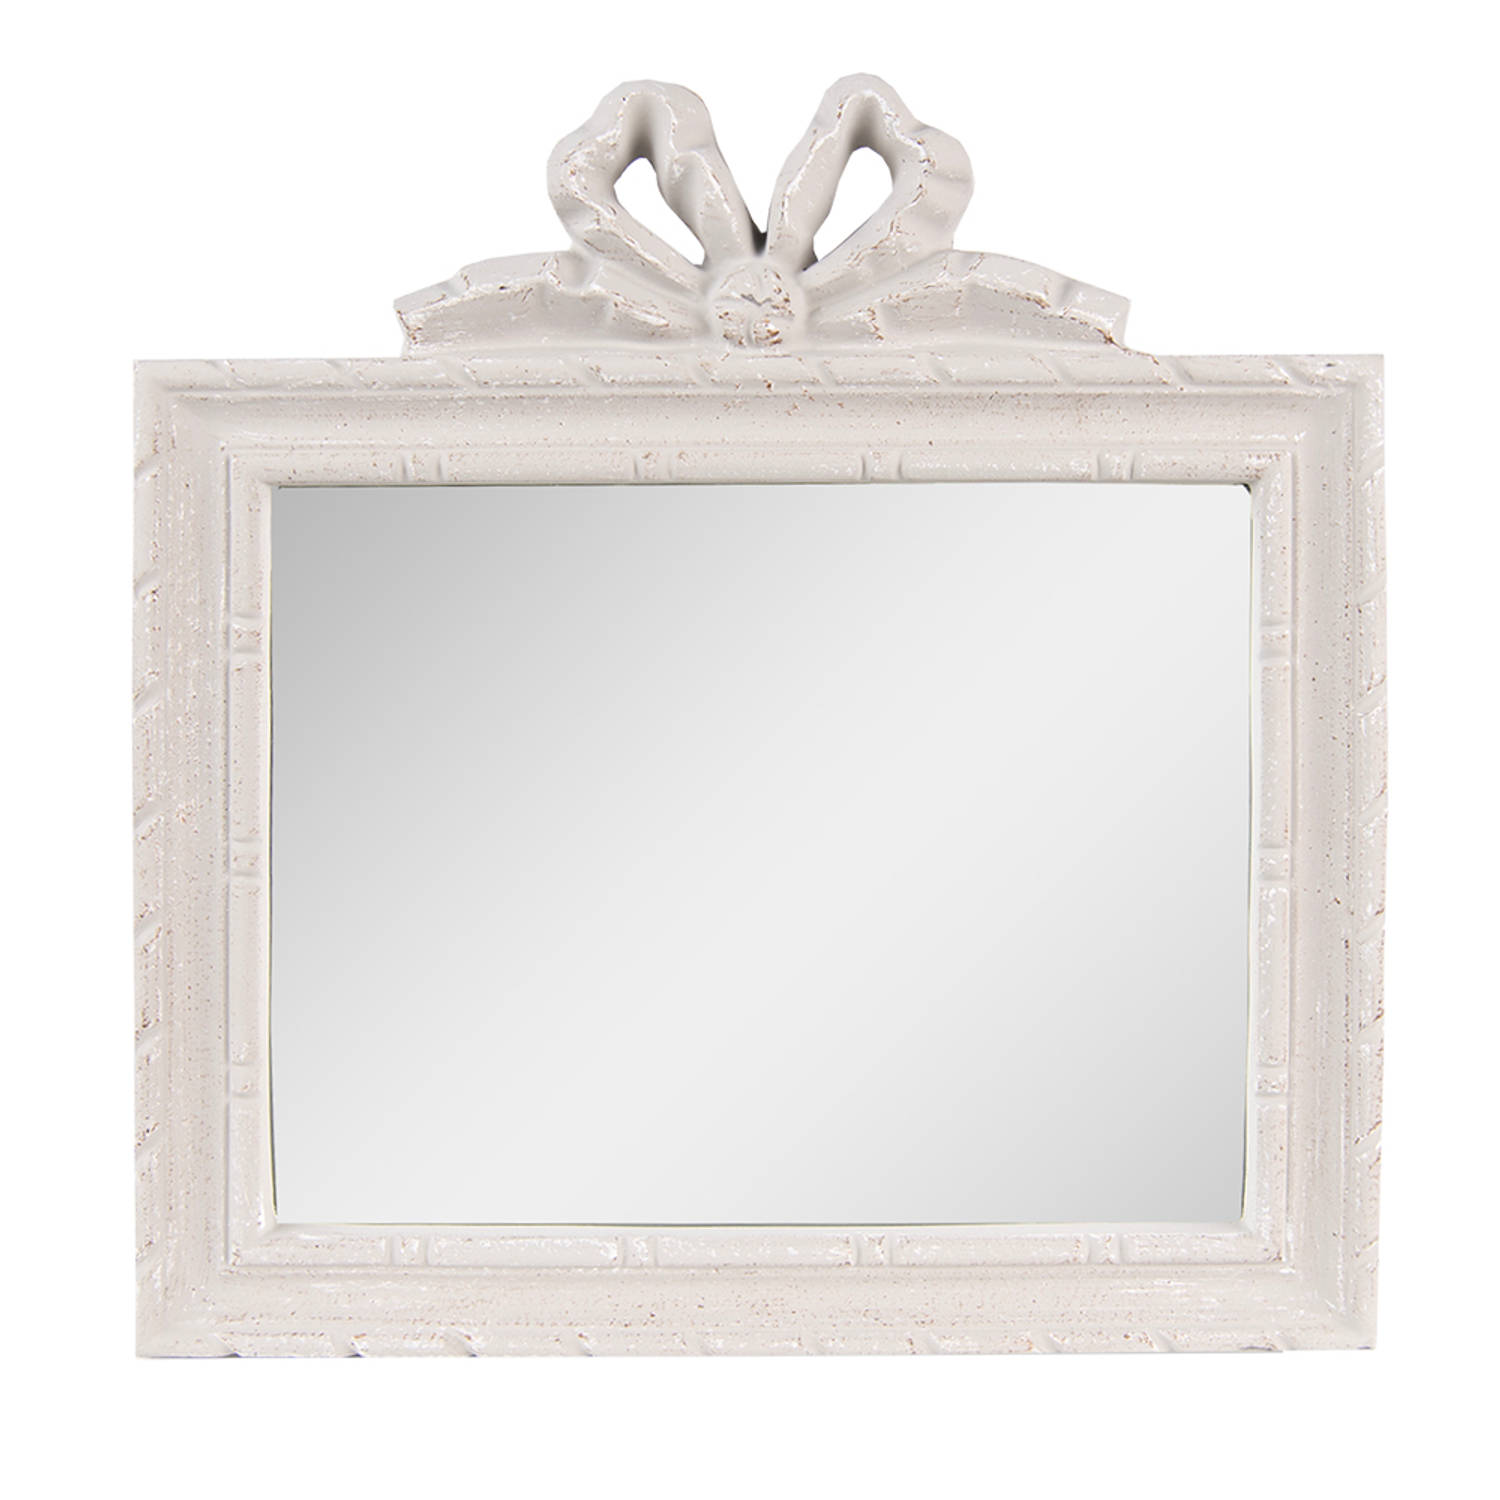 HAES DECO - Rechthoekige Spiegel met Strikje - Kleur Grijs - Formaat 30x2x31 cm - Materiaal Polyurethaan ( PU) - Wandspiegel, Spiegel Rechthoek